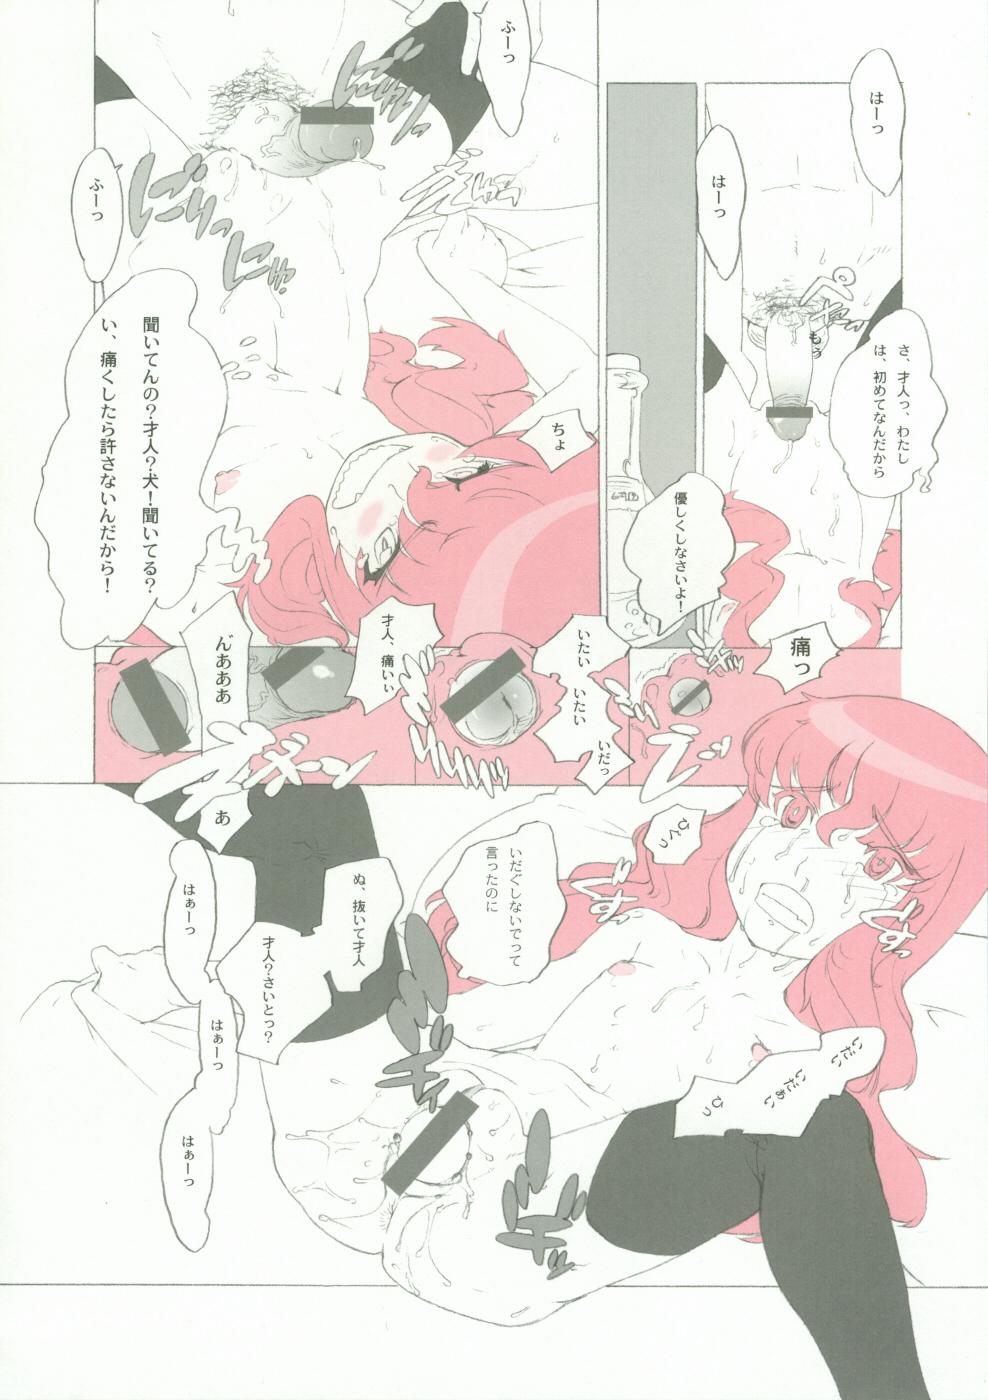 Old Momo Kami Shikiso - Zero no tsukaima Rope - Page 13